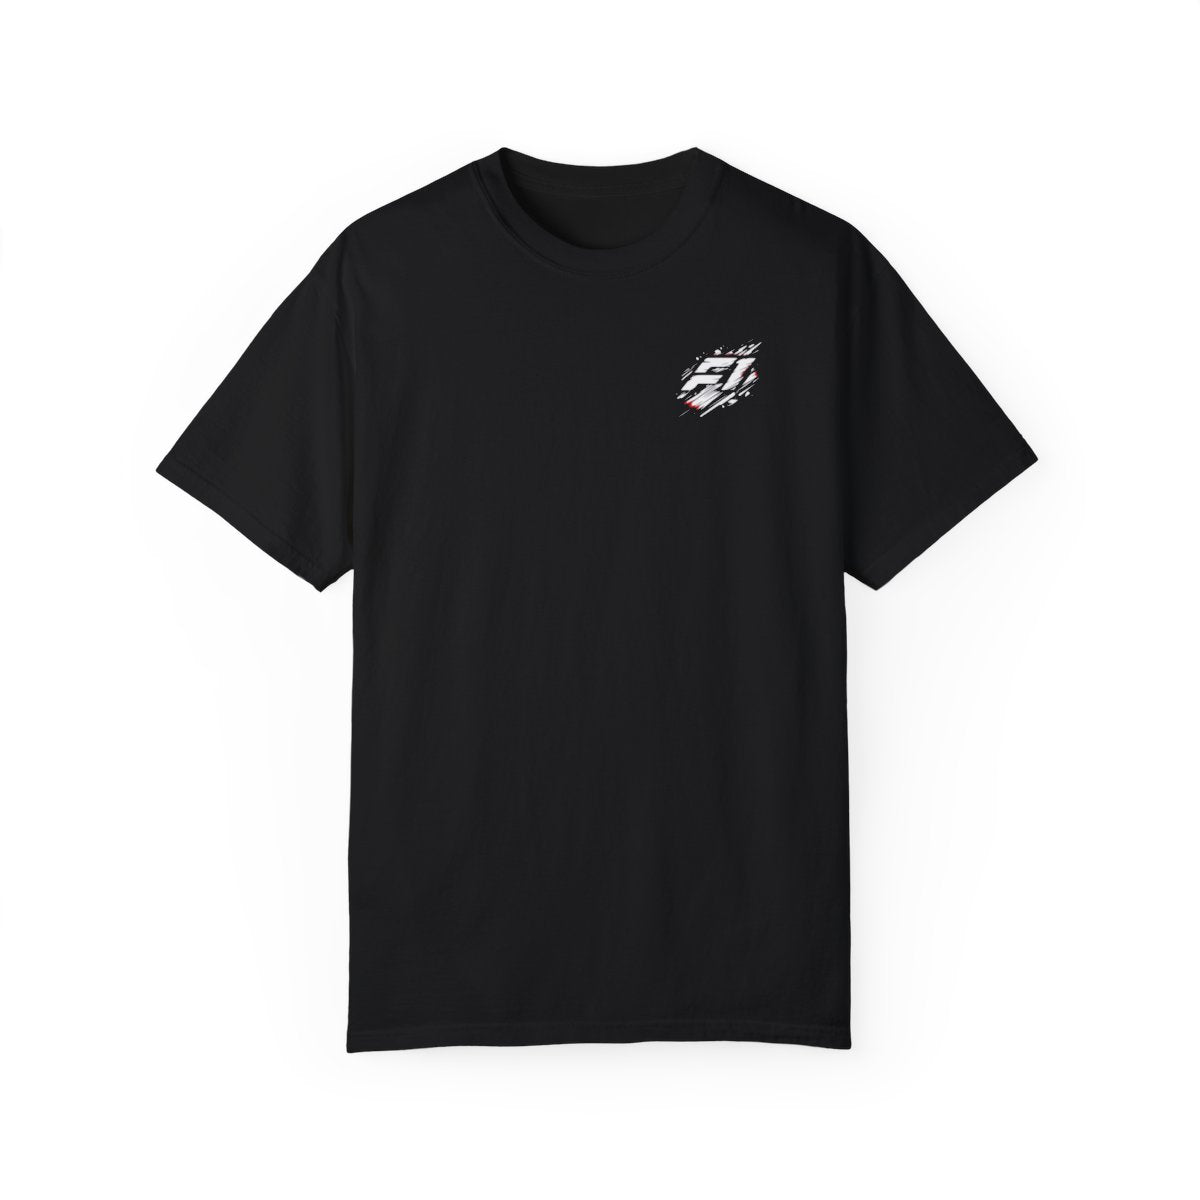 F1 Fan Favorite Unisex T-shirt